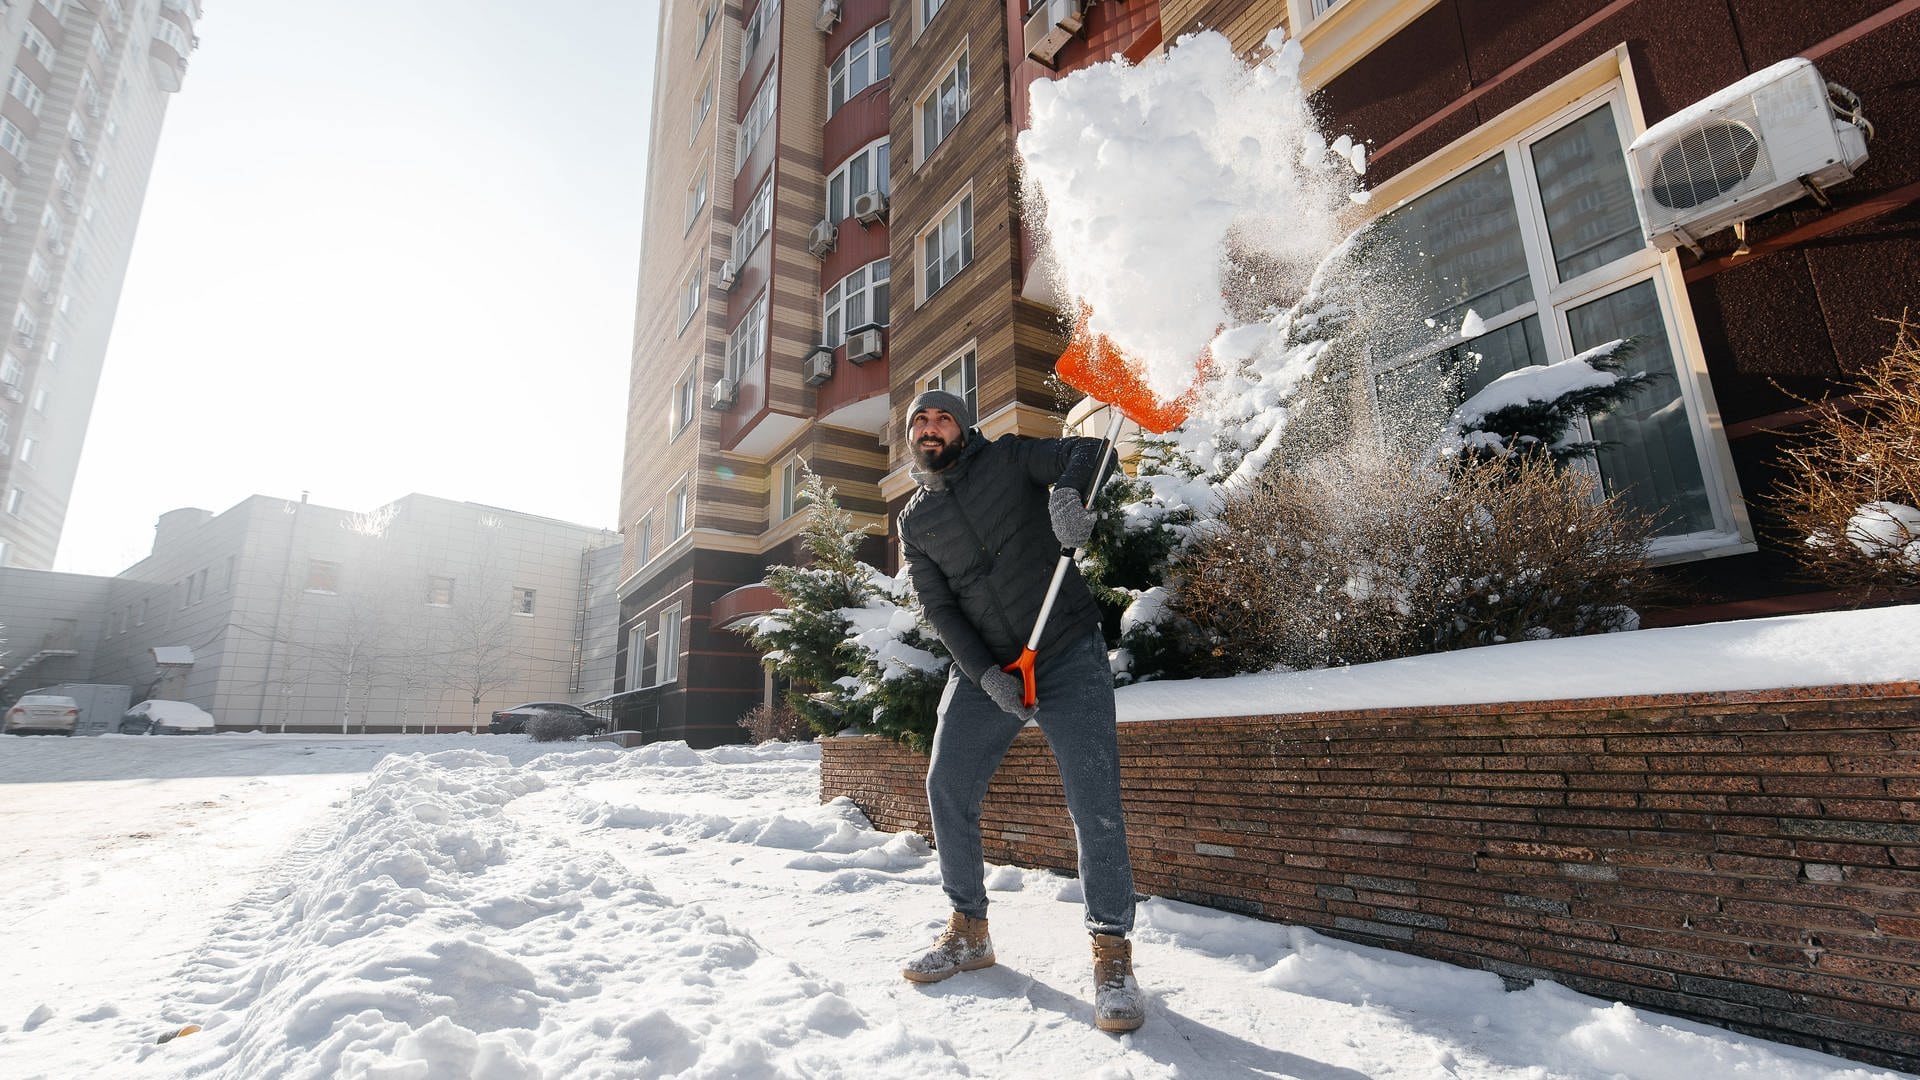 Mann räumt Schnee mit einer Schneeschaufel weg